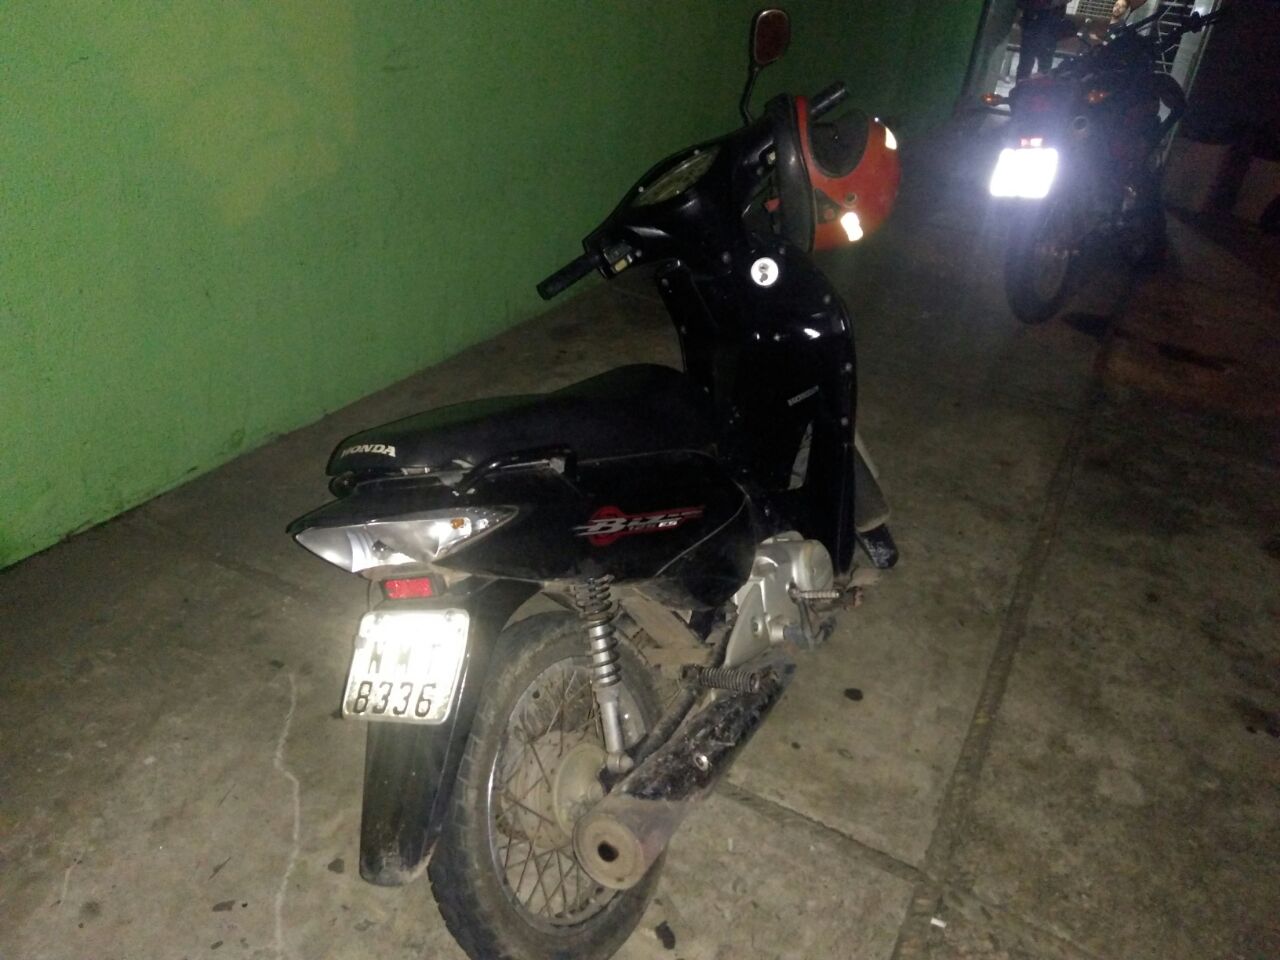 Motocicleta roubada, utilizada pelos adolescentes para realizar assaltos.